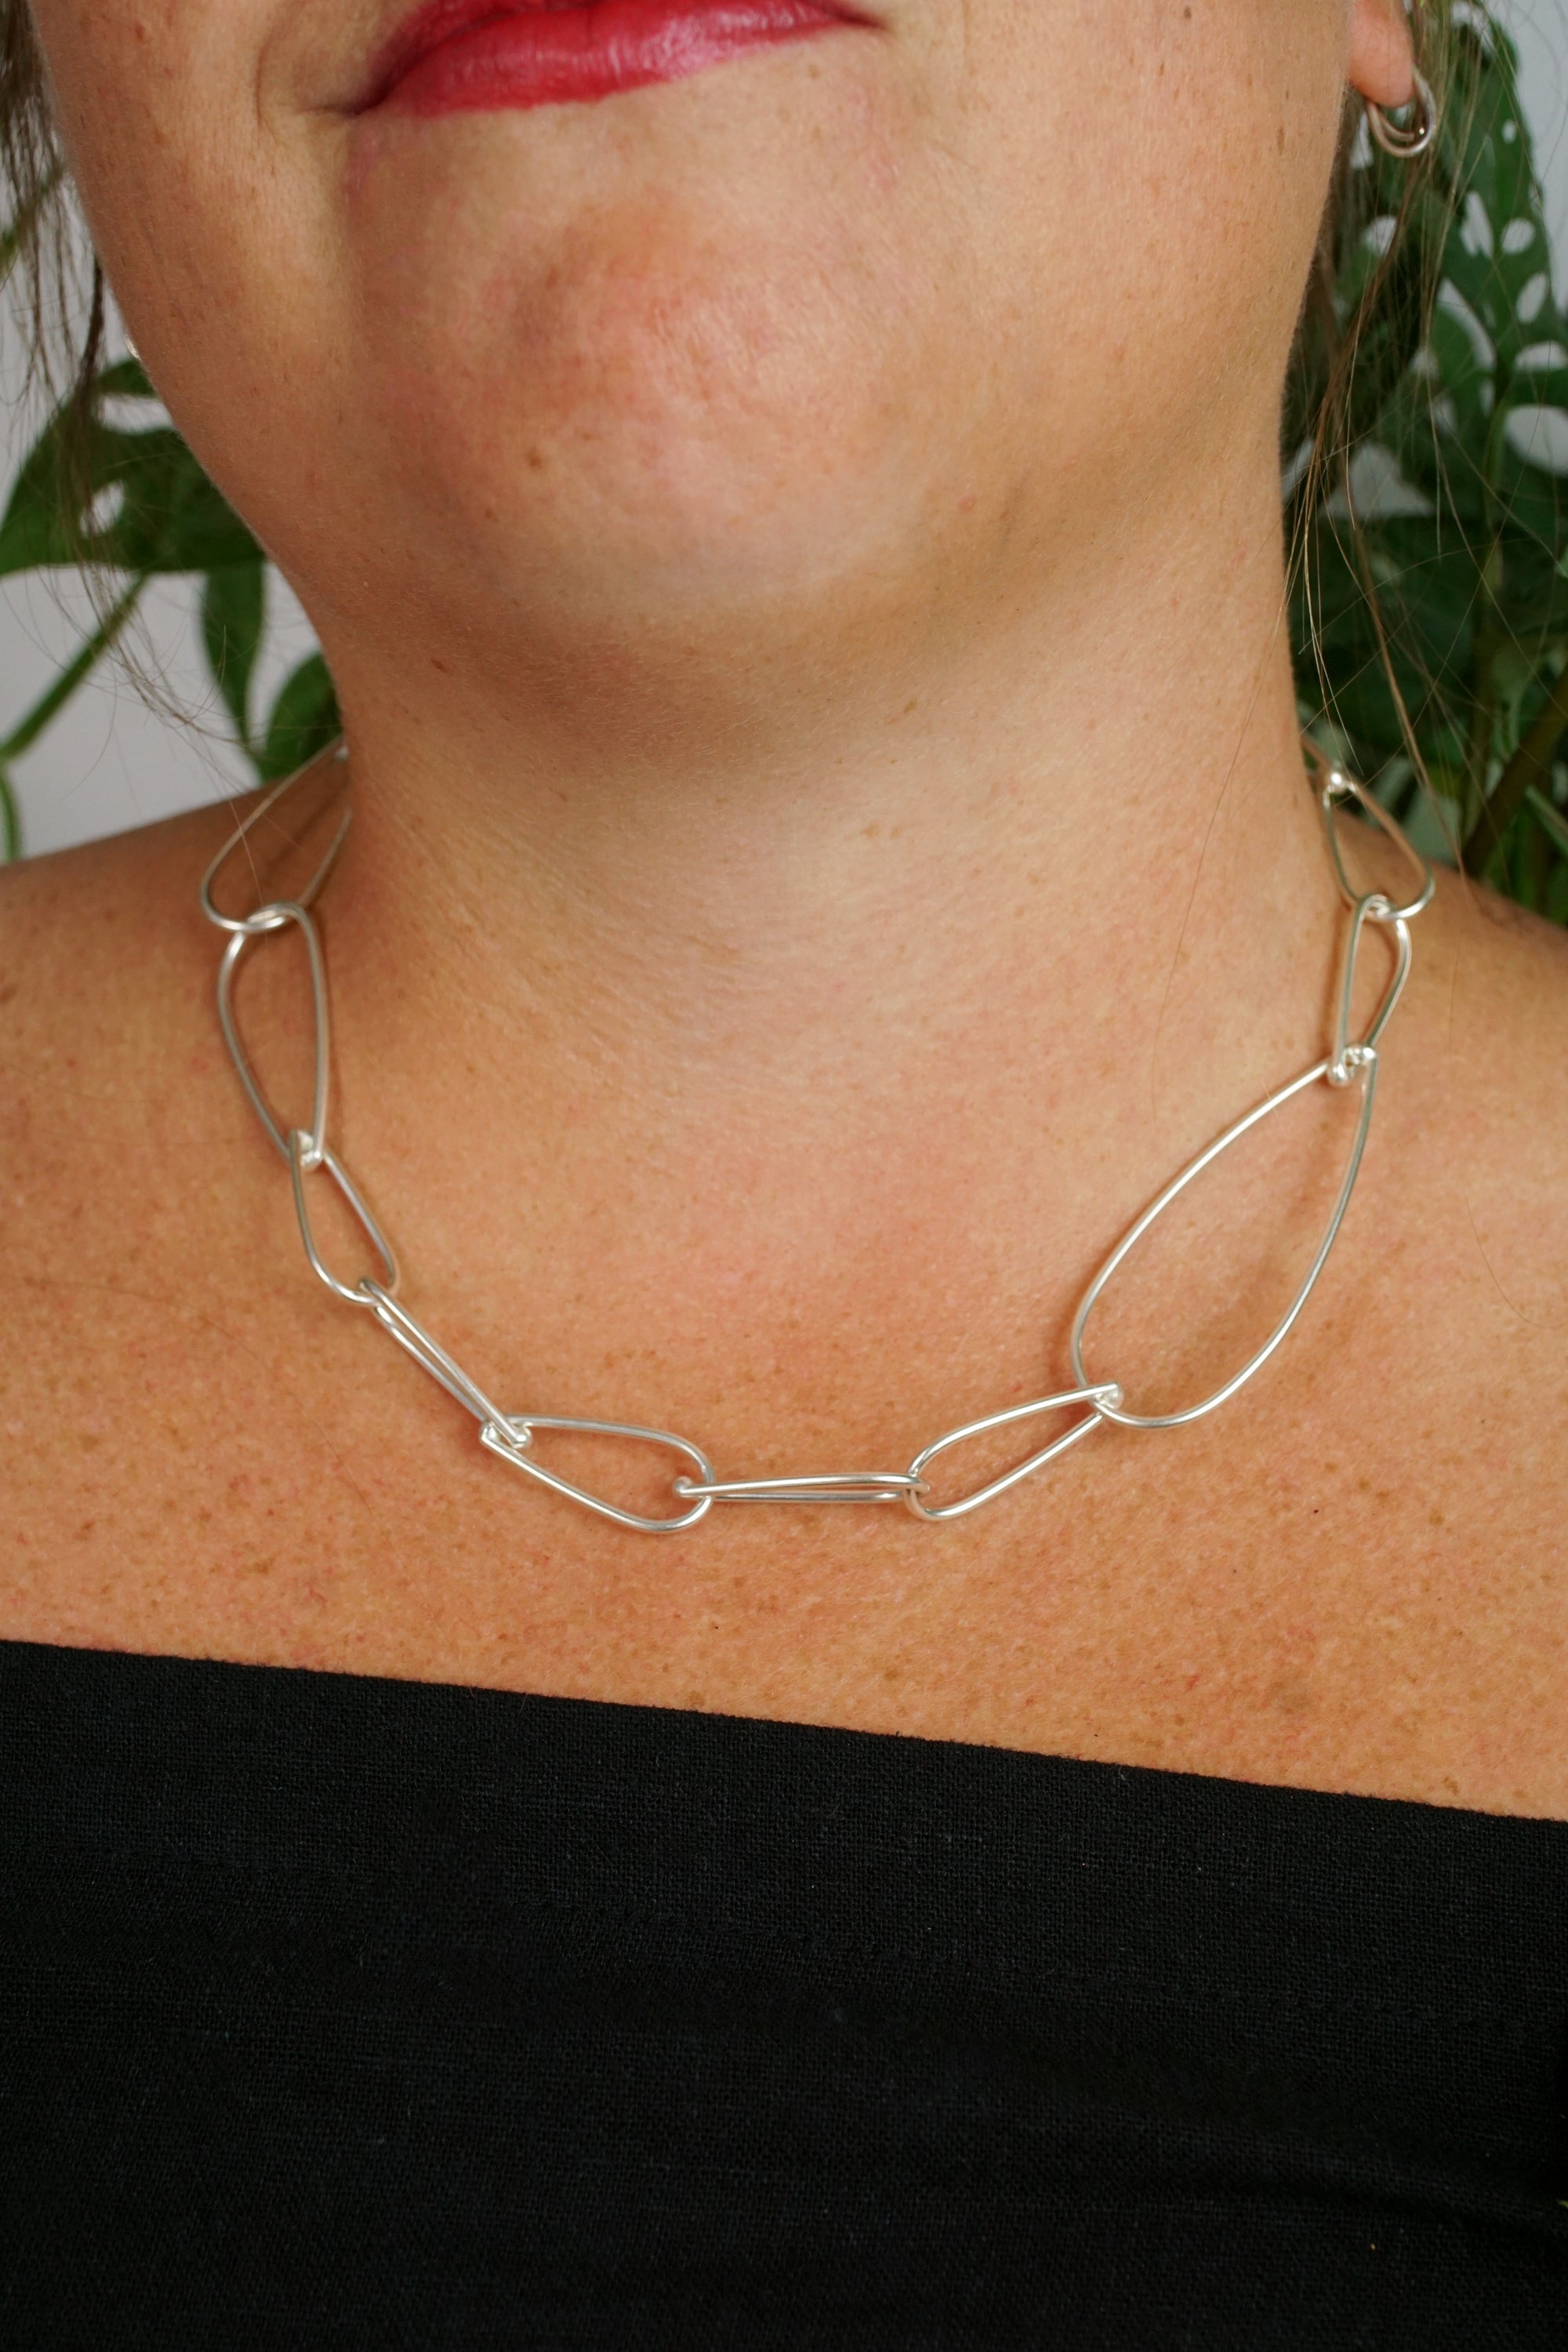 Midi Modular Necklace No. 2 in silver